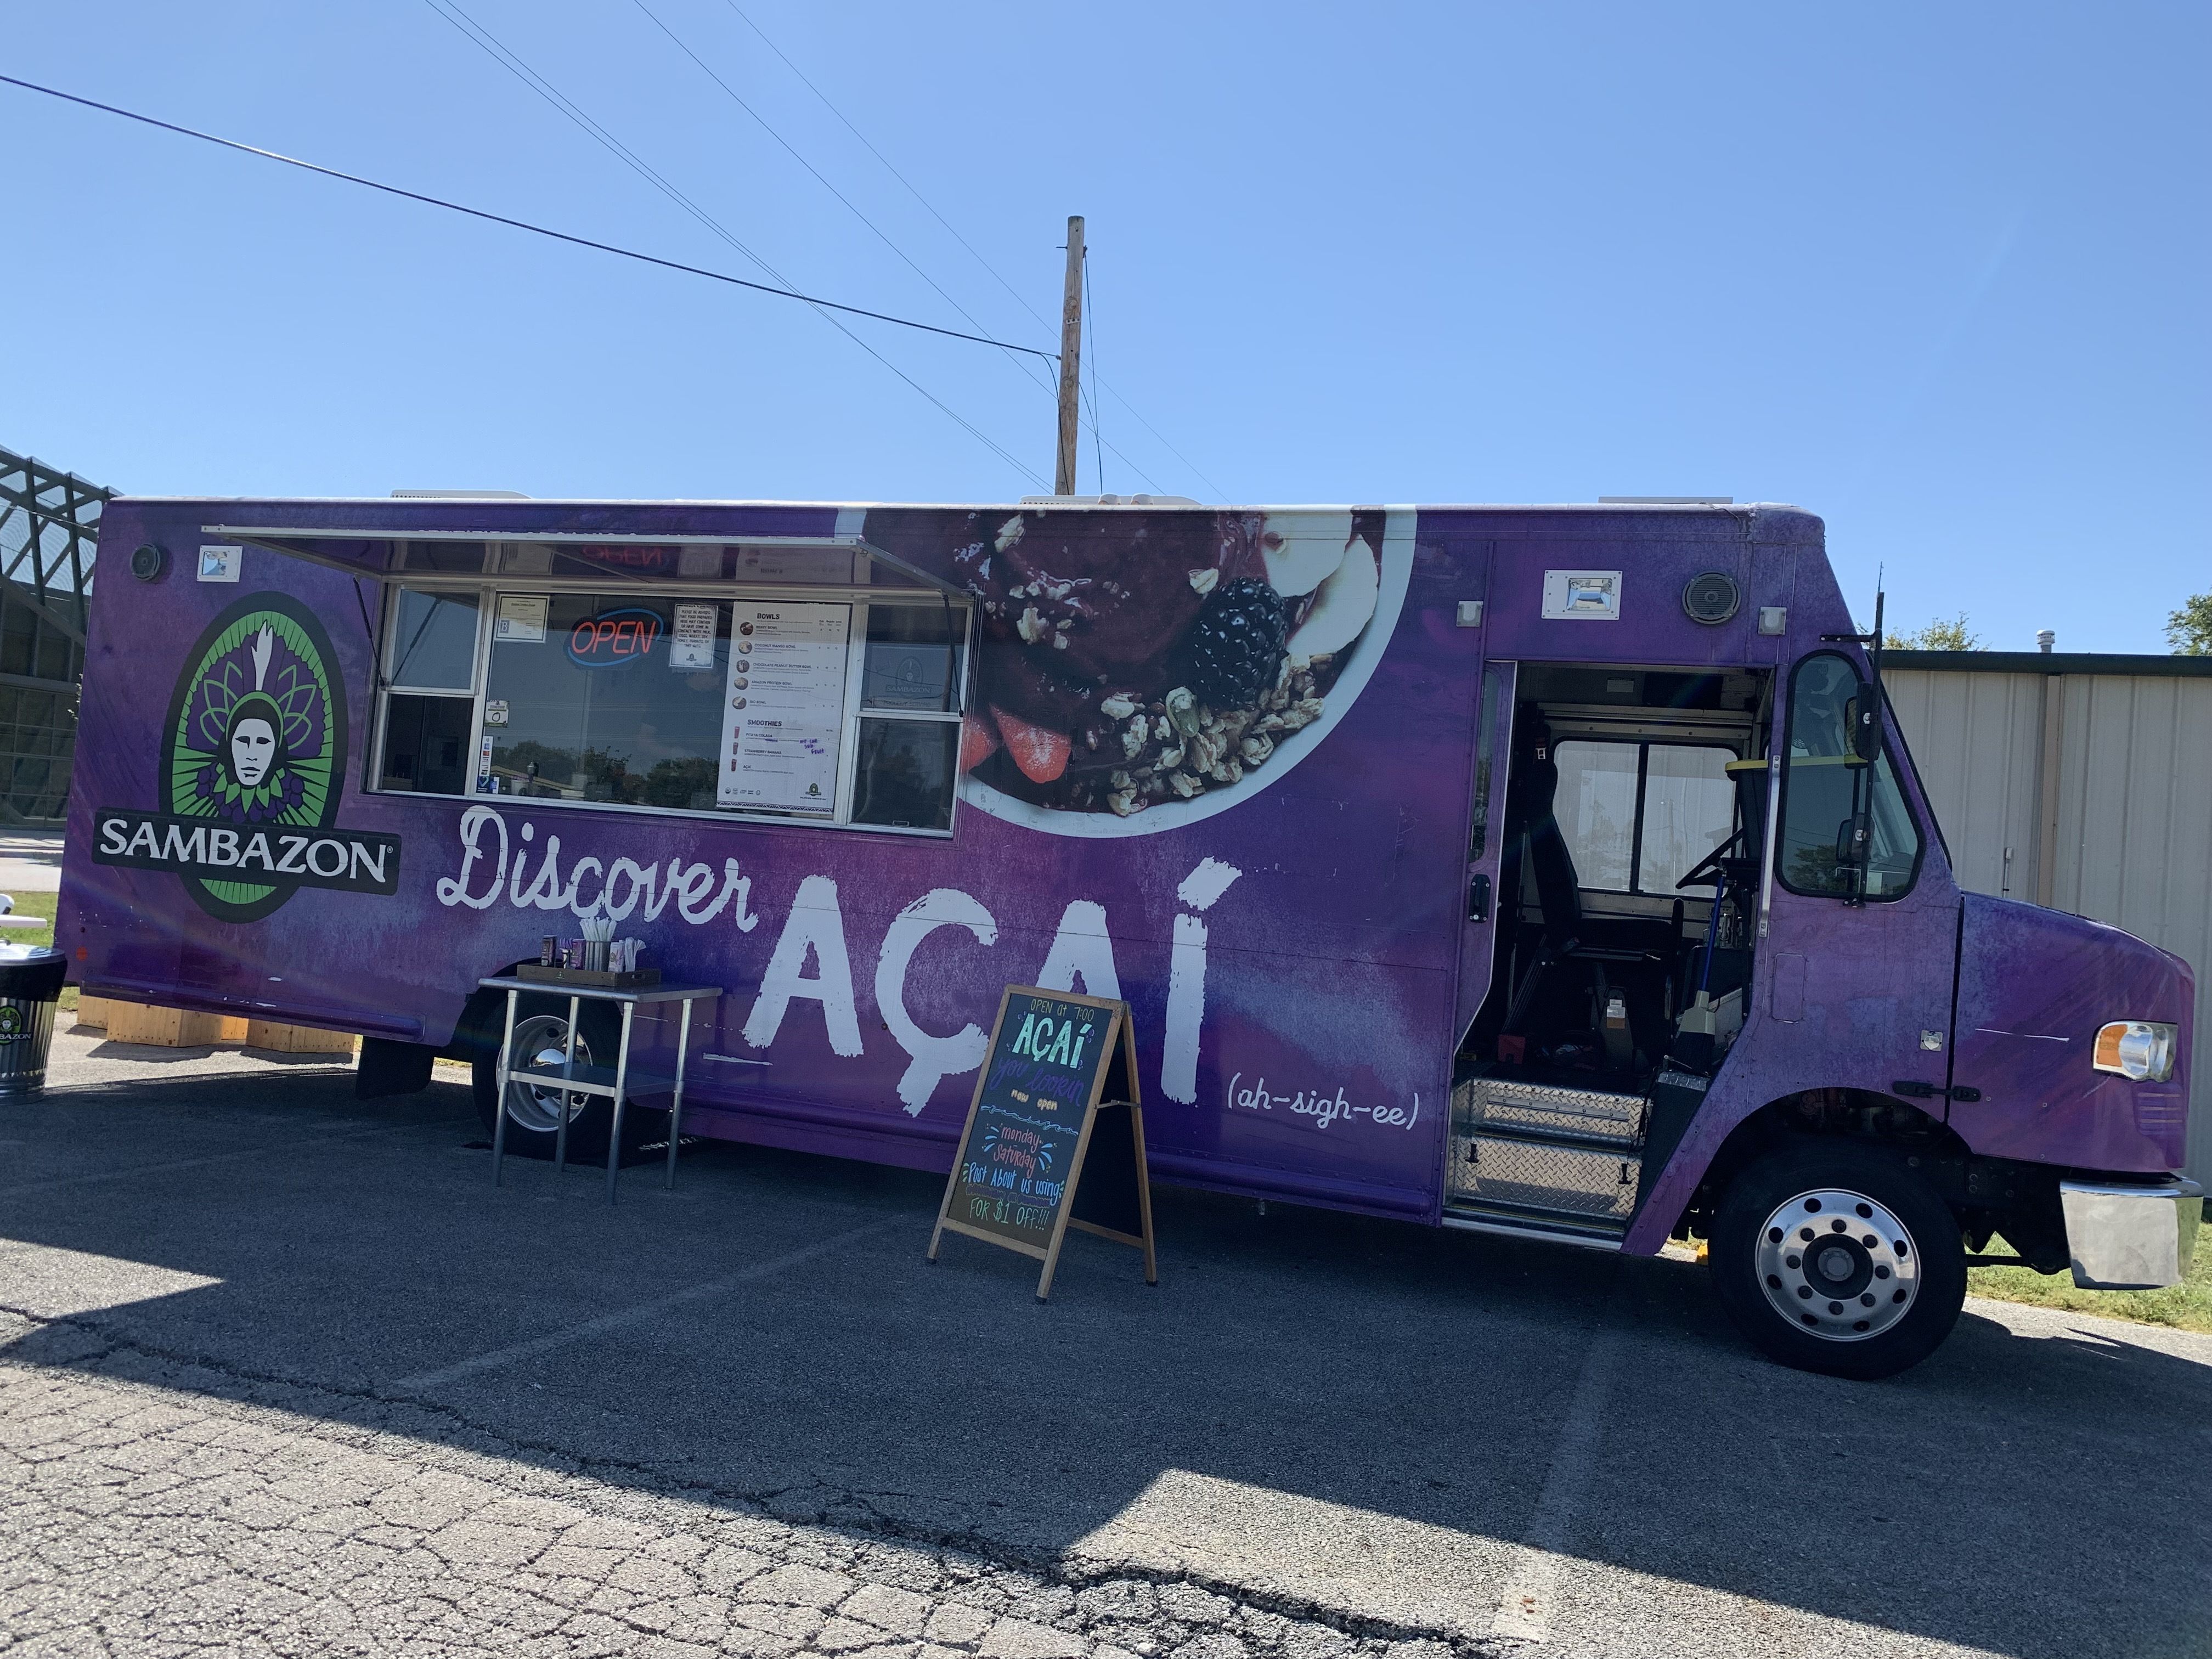 The açaí food truck in Bentonville.